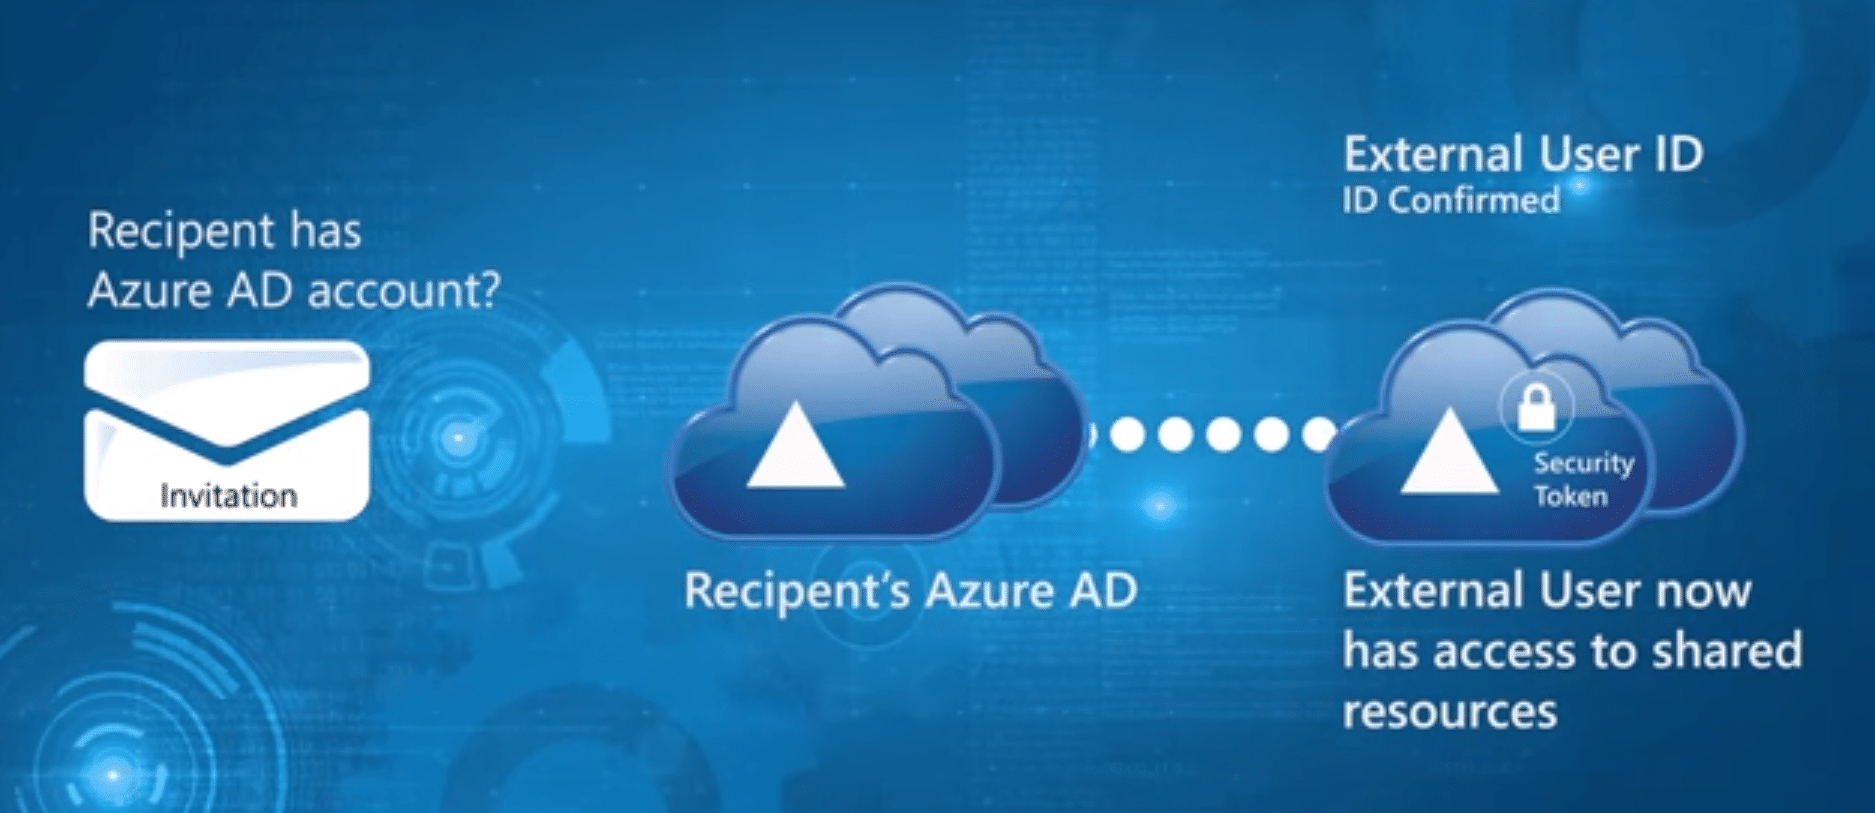 Si utilisateur ne possède pas de compte Azure AD pour vérification identité accès données entreprise